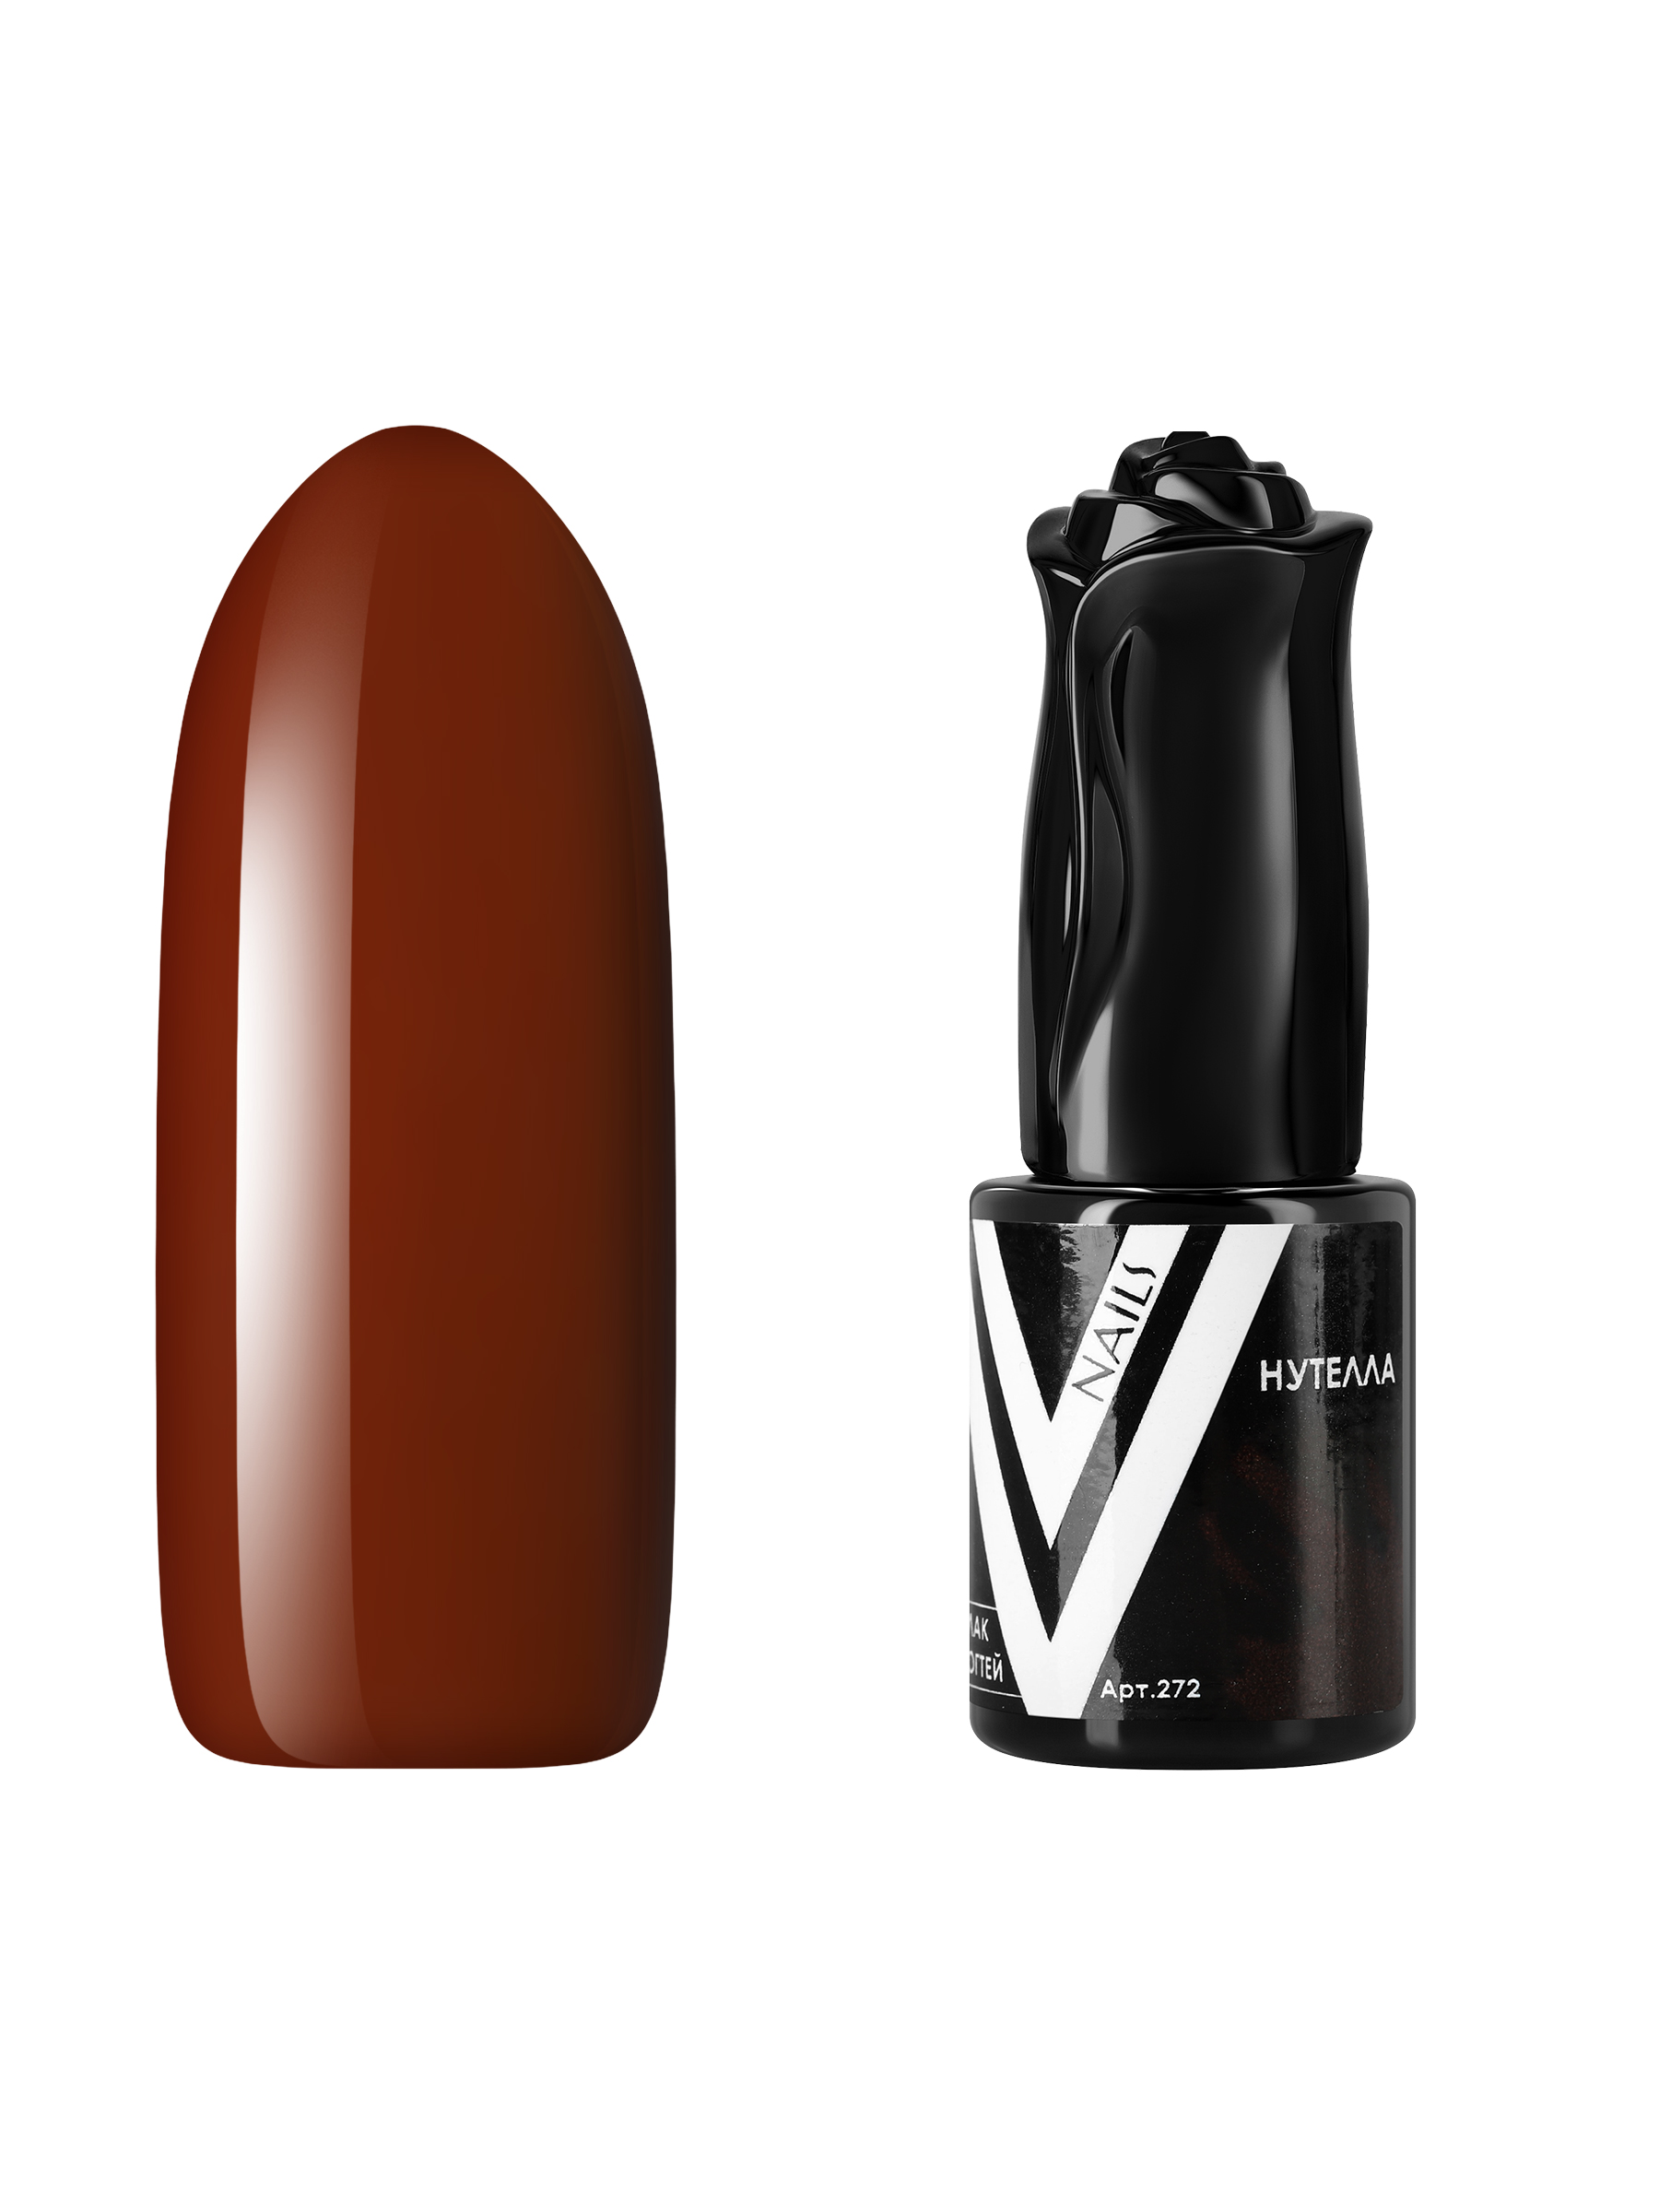 Гель-лак для ногтей Vogue Nails плотный самовыравнивающийся, коричневый, 10 мл дегидратирующий тоник для рук vogue nails очищающий антибактериальный для маникюра 250 мл